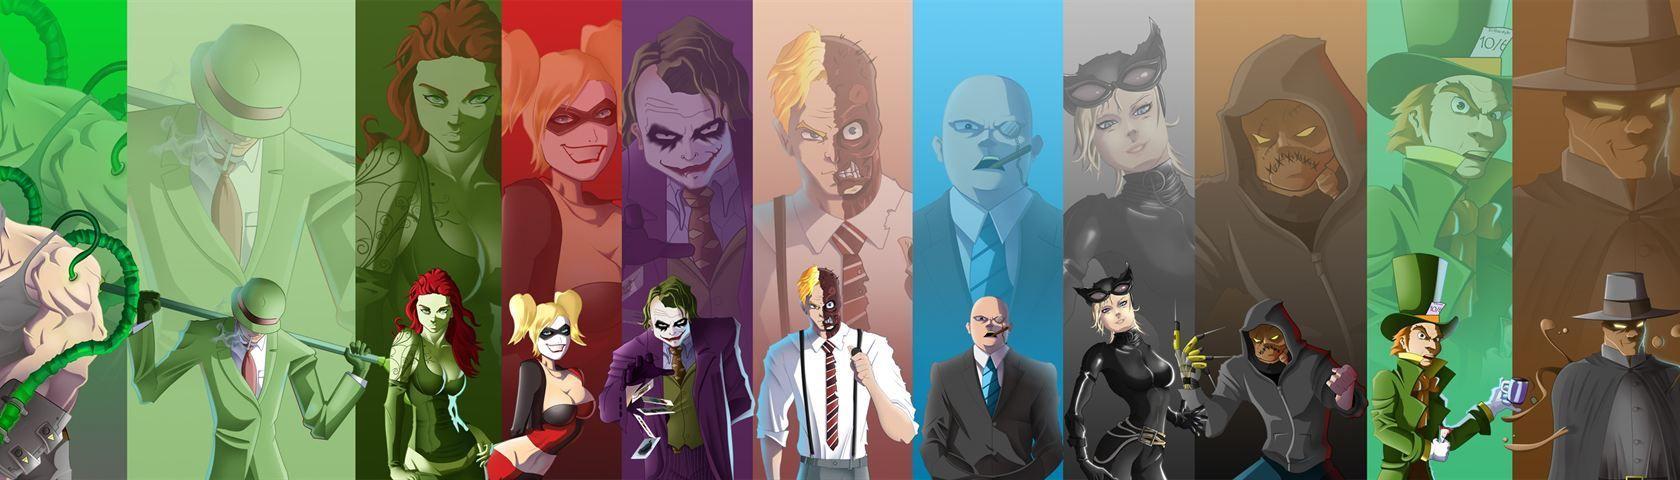 Batman Villains • Image • WallpaperFusion • WallpaperFusion